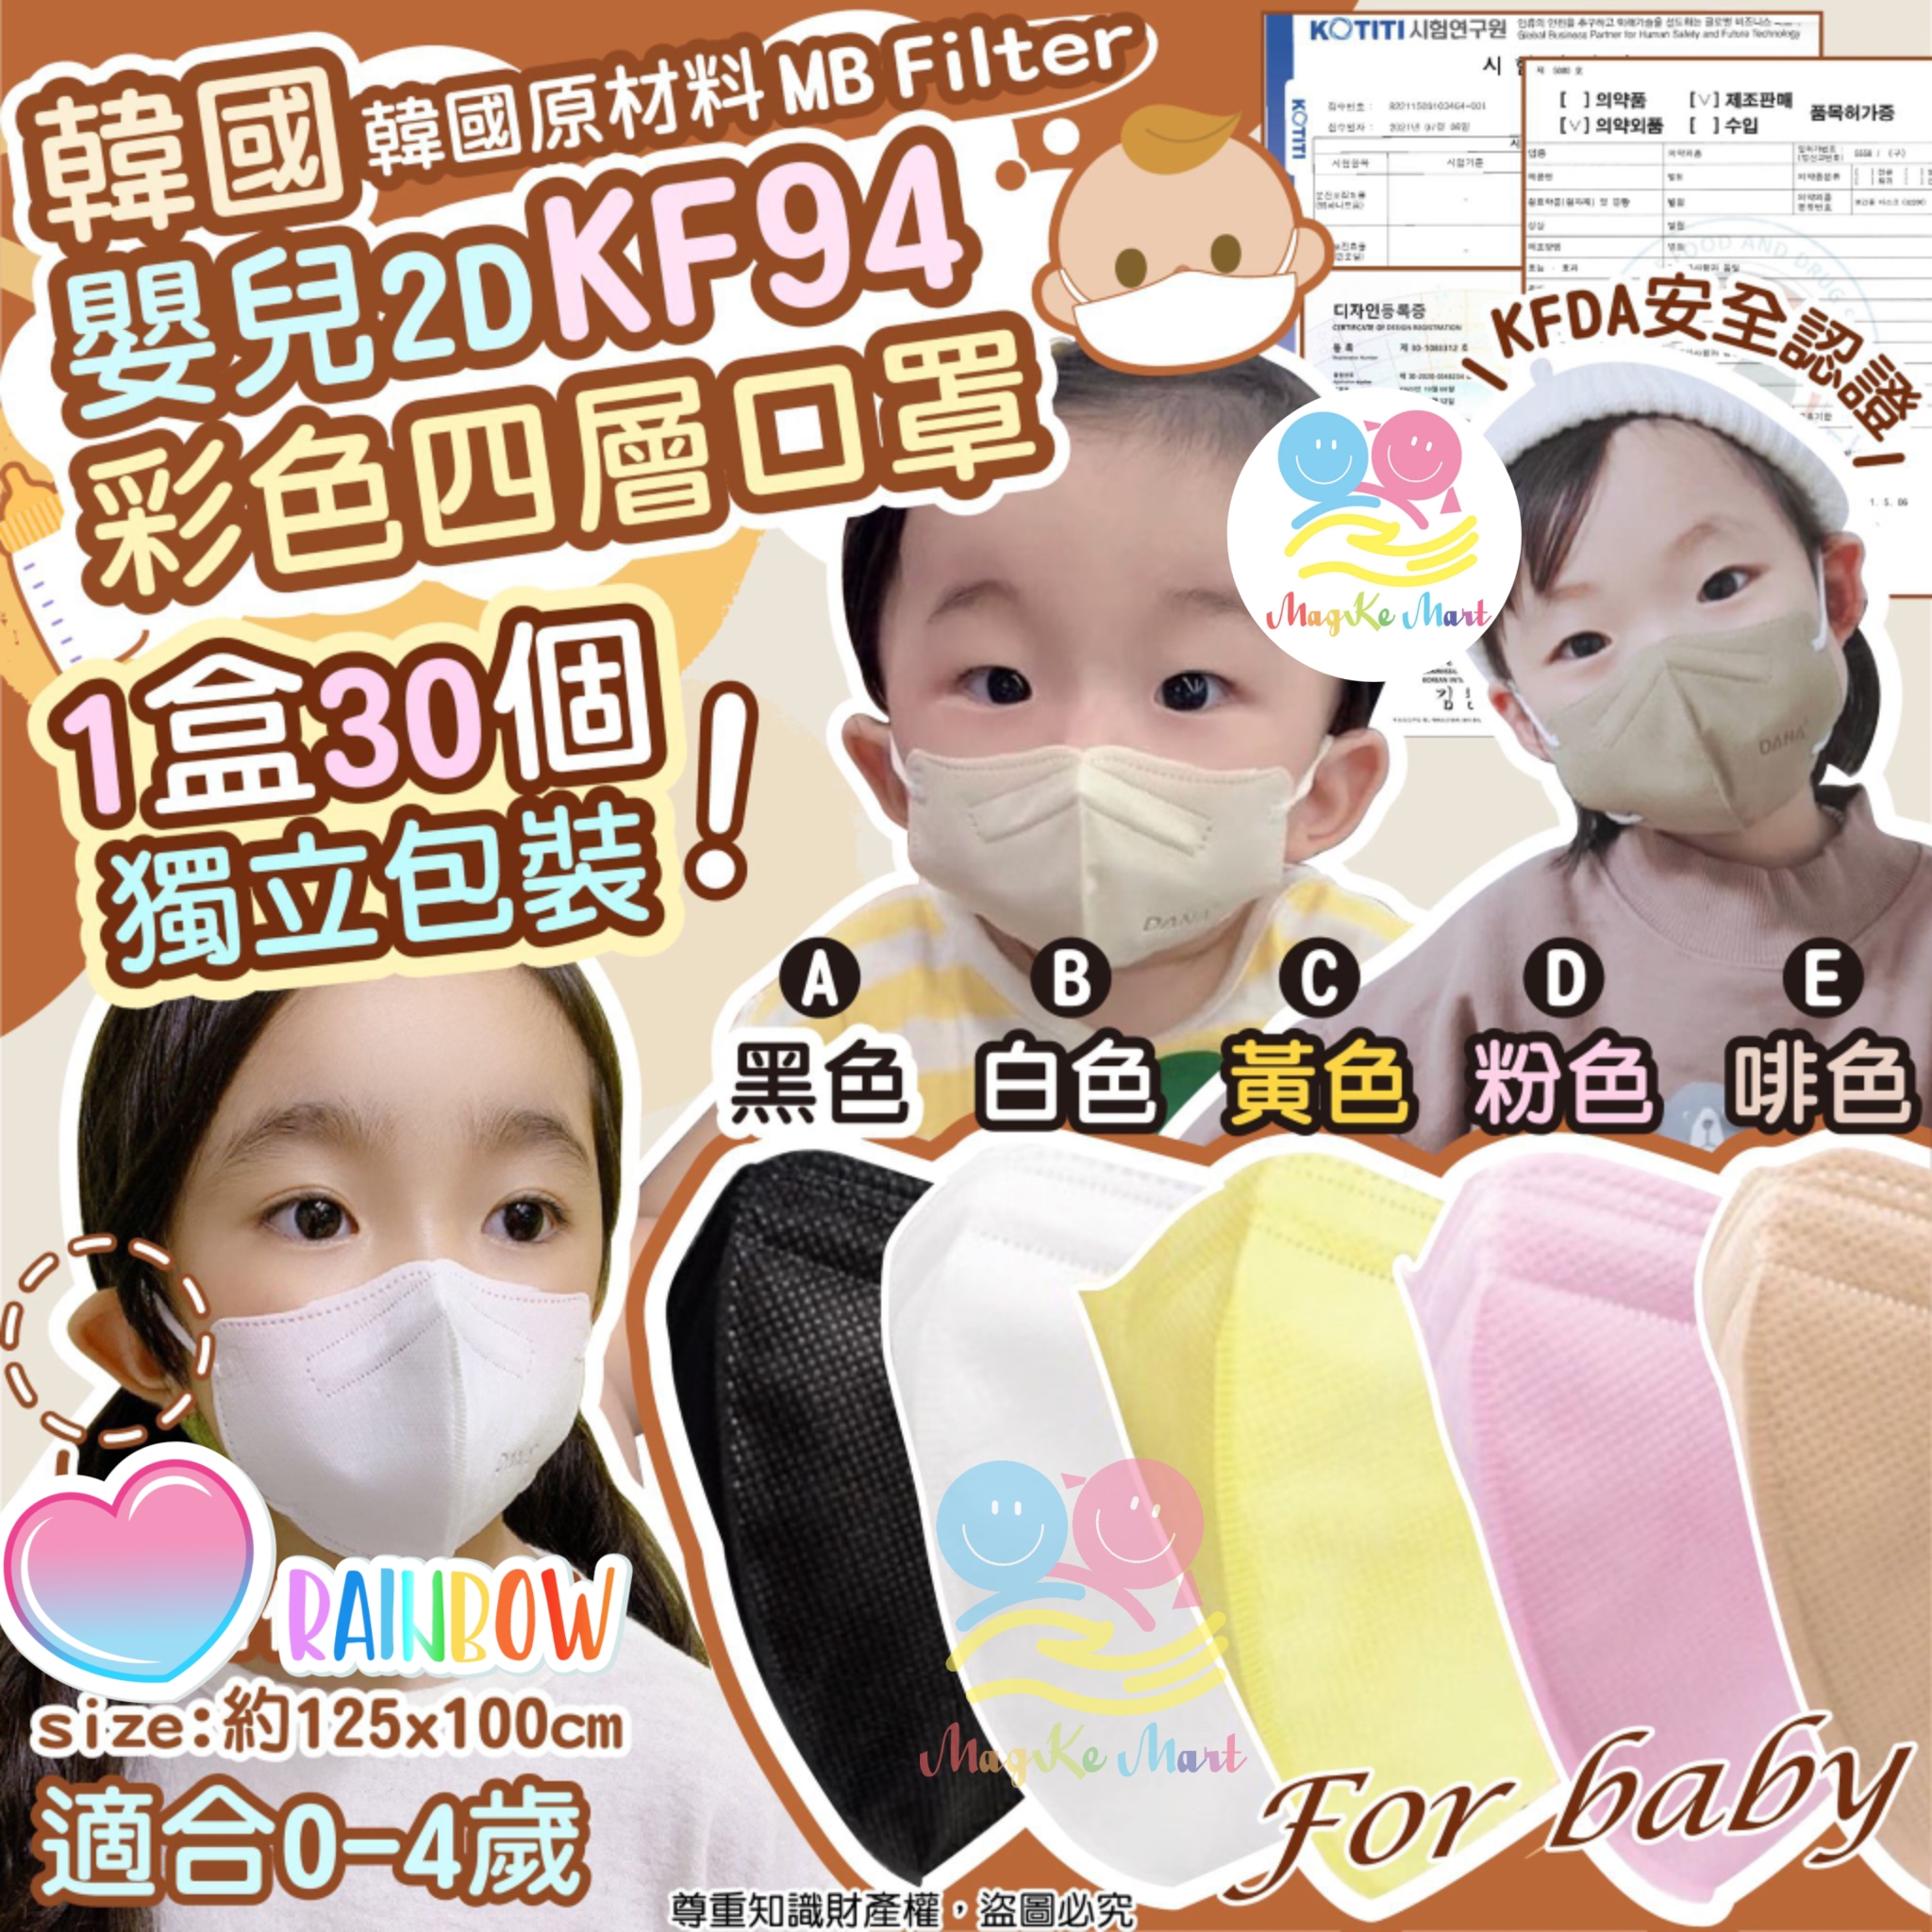 韓國嬰兒 2D KF94 彩色四層口罩(1盒30個)(獨立包裝)